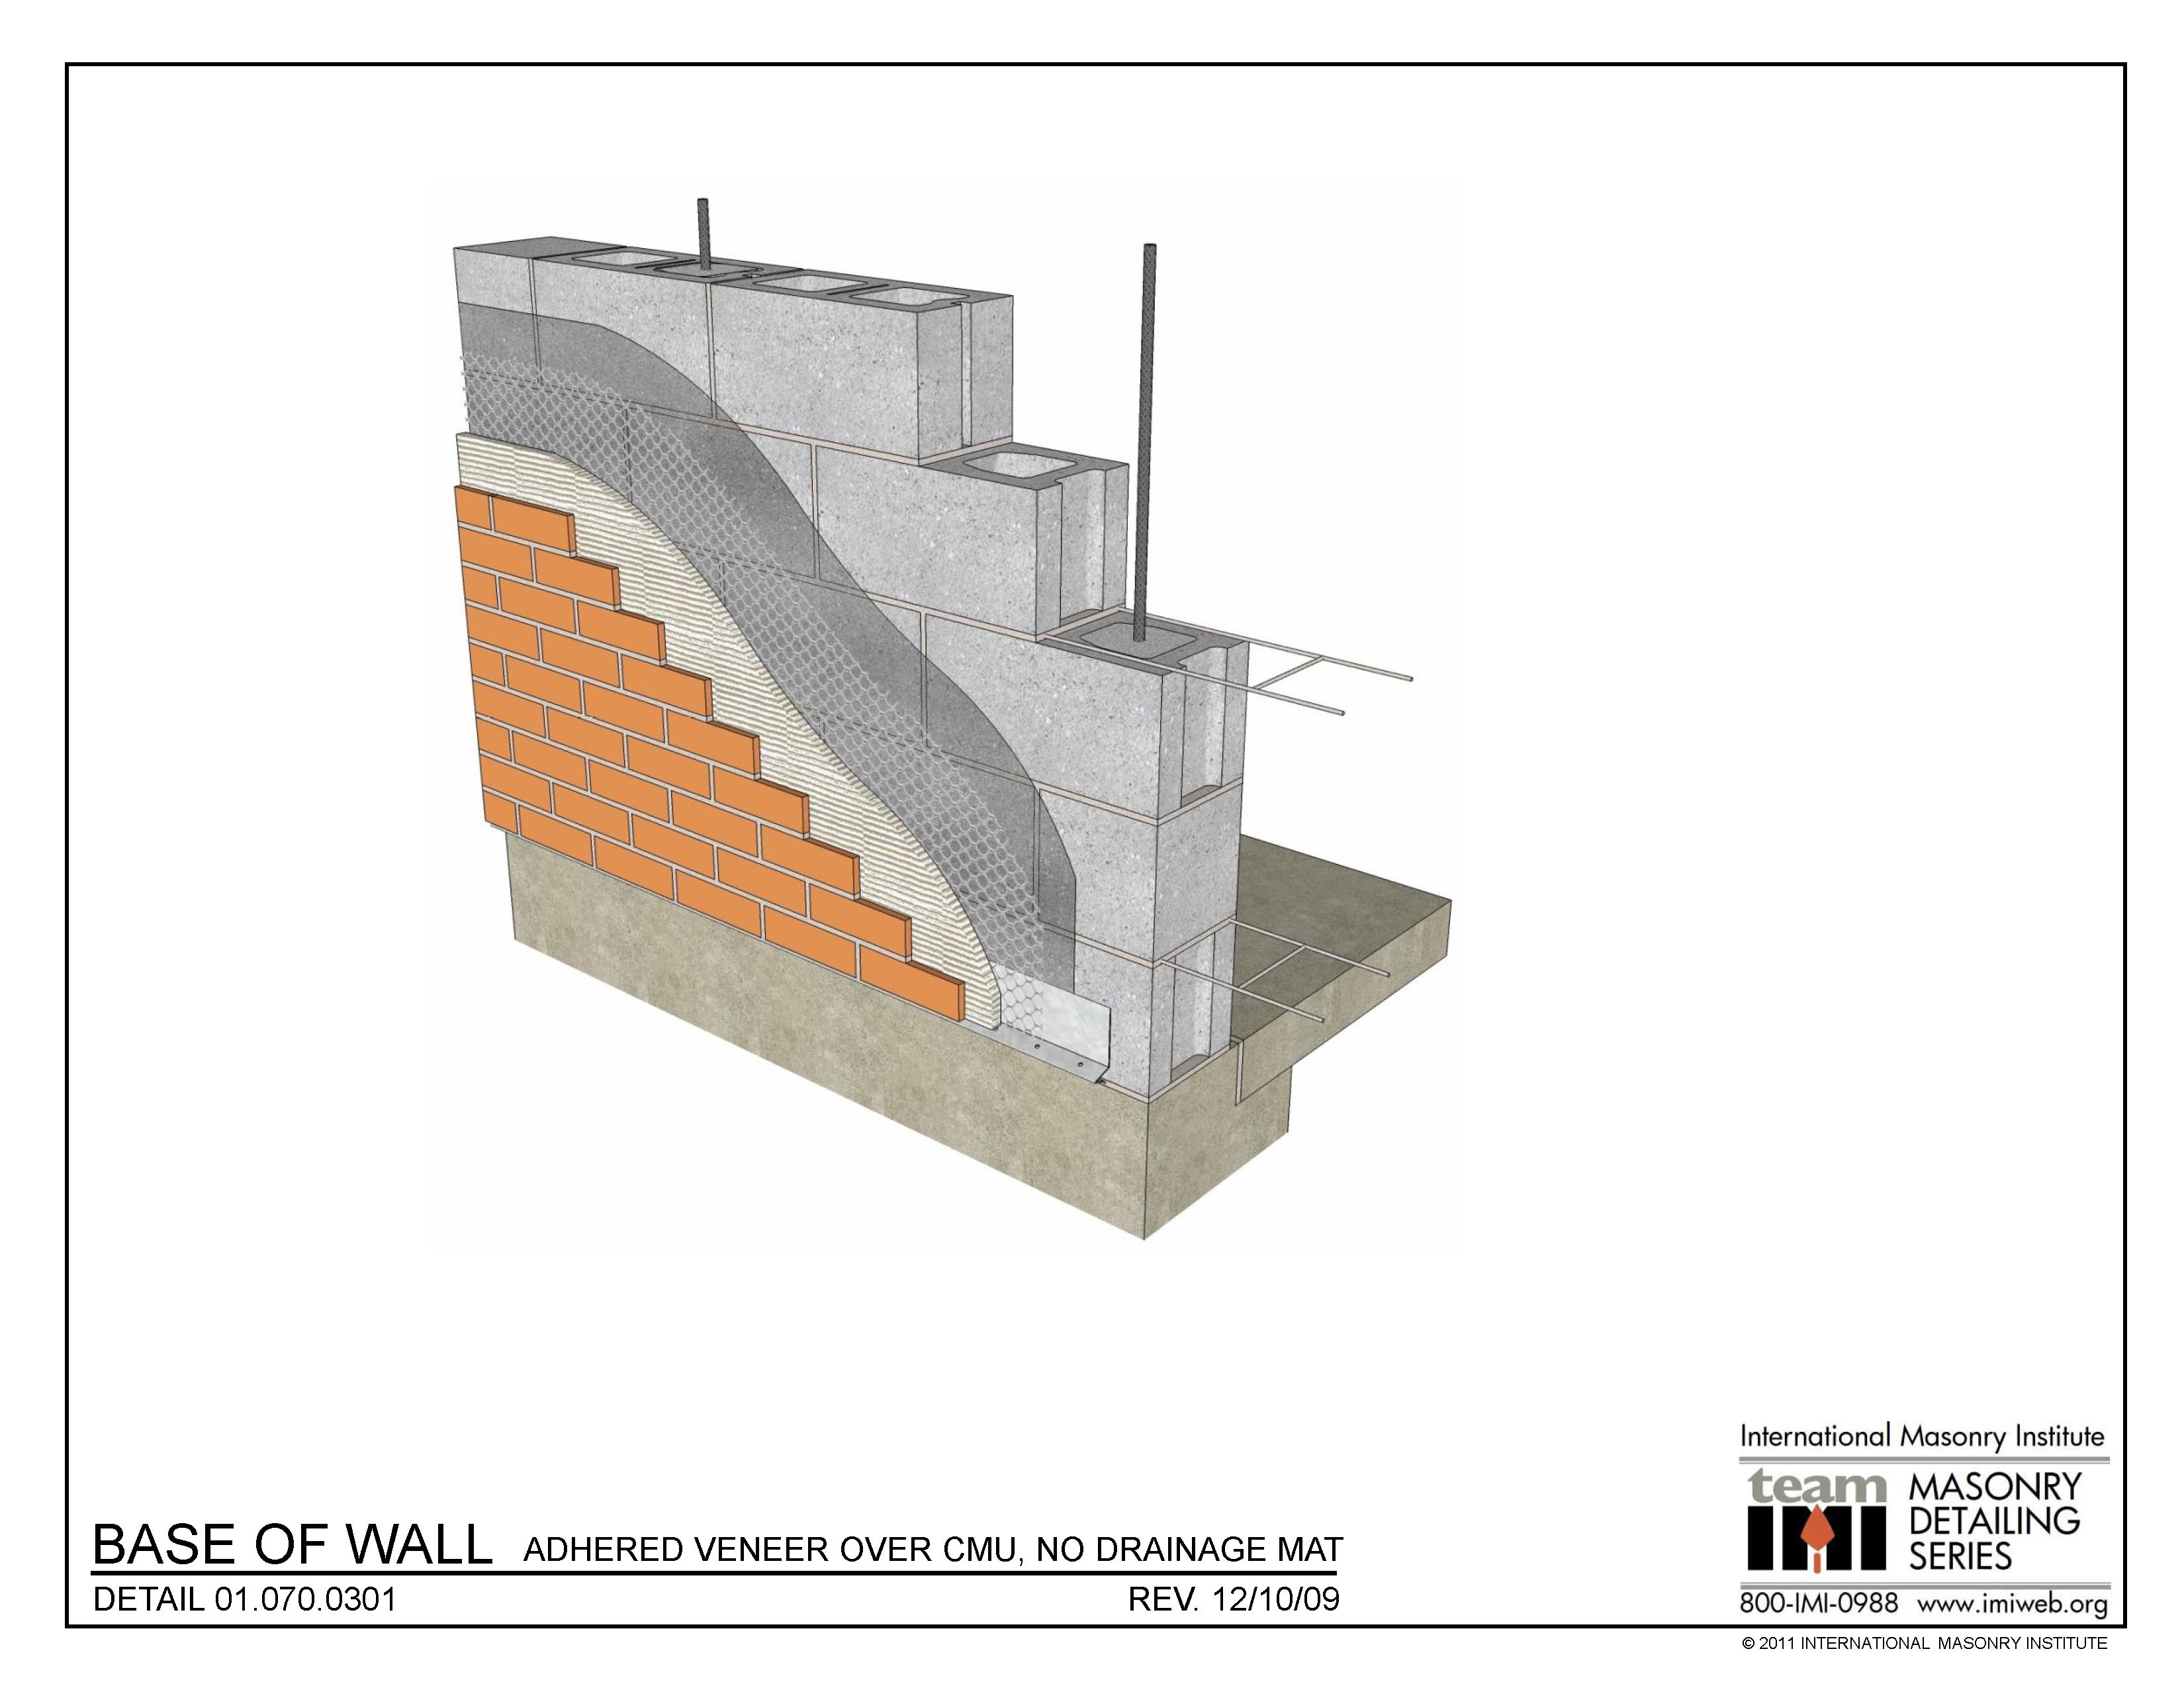 01.070.0301: Base of Wall - Adhered Veneer Over CMU, No Drainage Mat